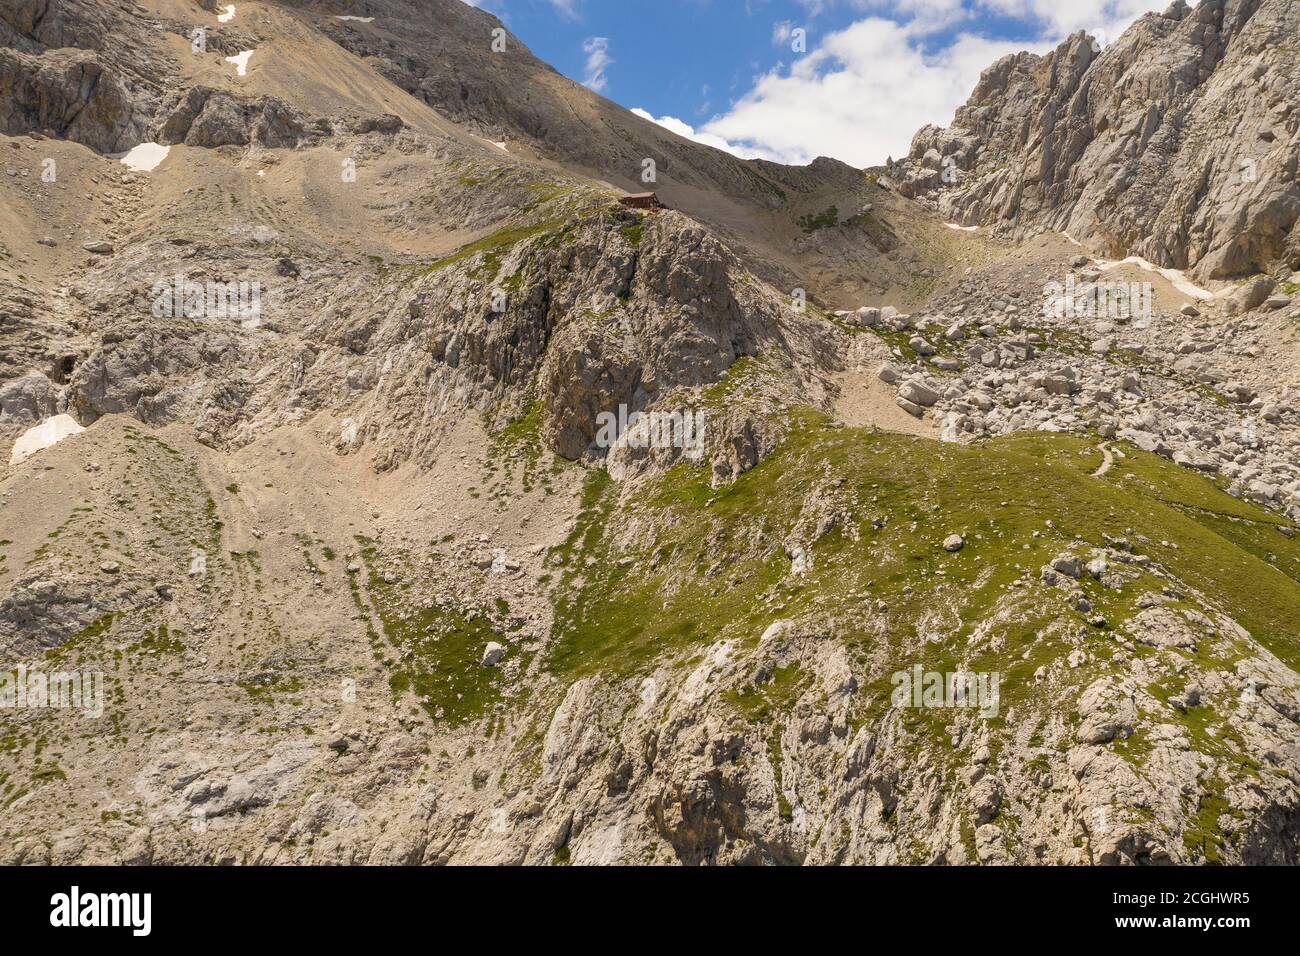 Veduta aerea del rifugio Franchetti a cavallo delle due corna nella zona montana del gran sasso italia abruzzo Foto Stock